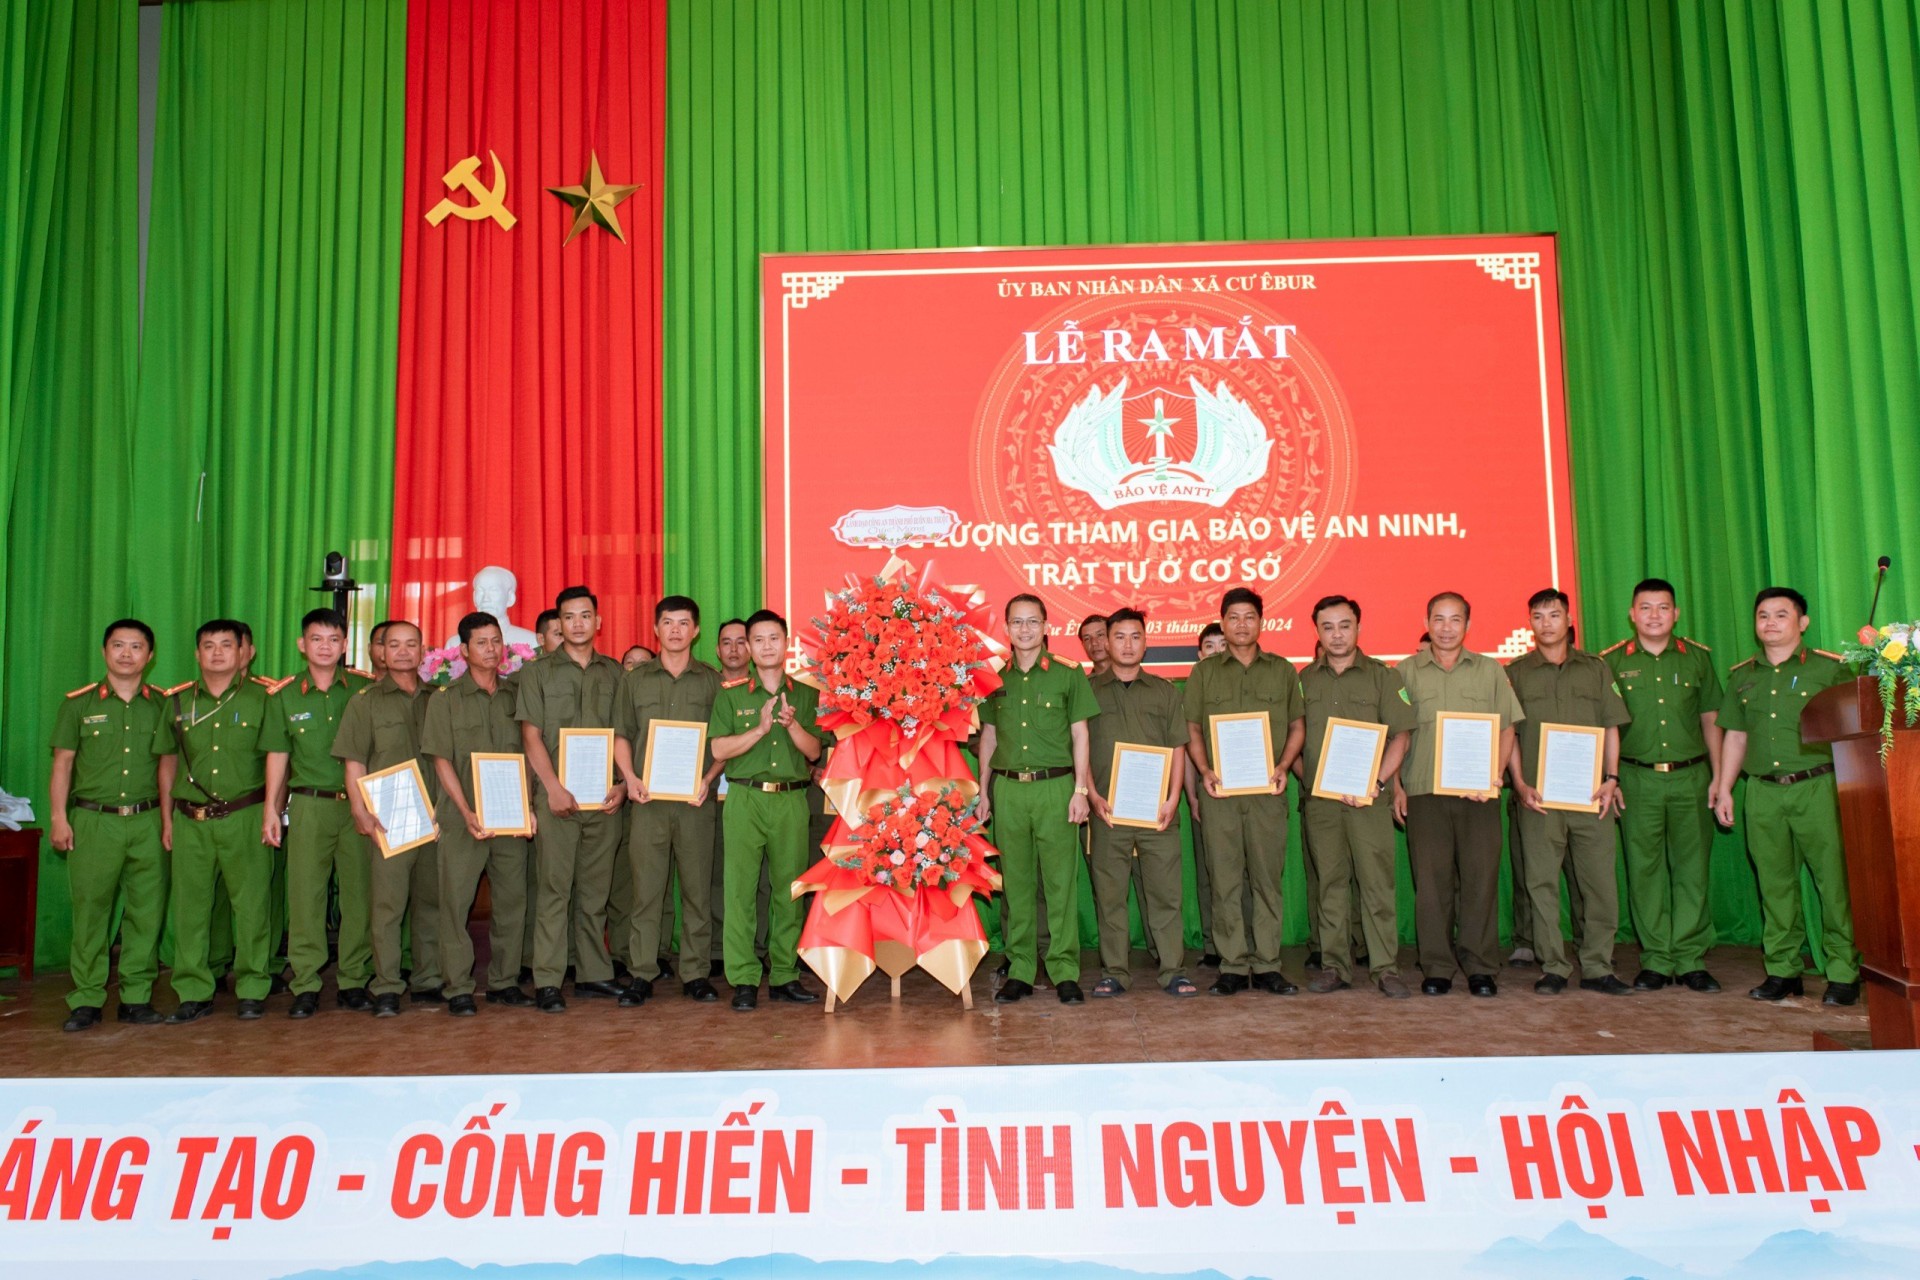 Xã Cư Êbur tổ chức lễ ra mắt lực lượng tham gia bảo vệ an ninh trật tự ở cơ sở